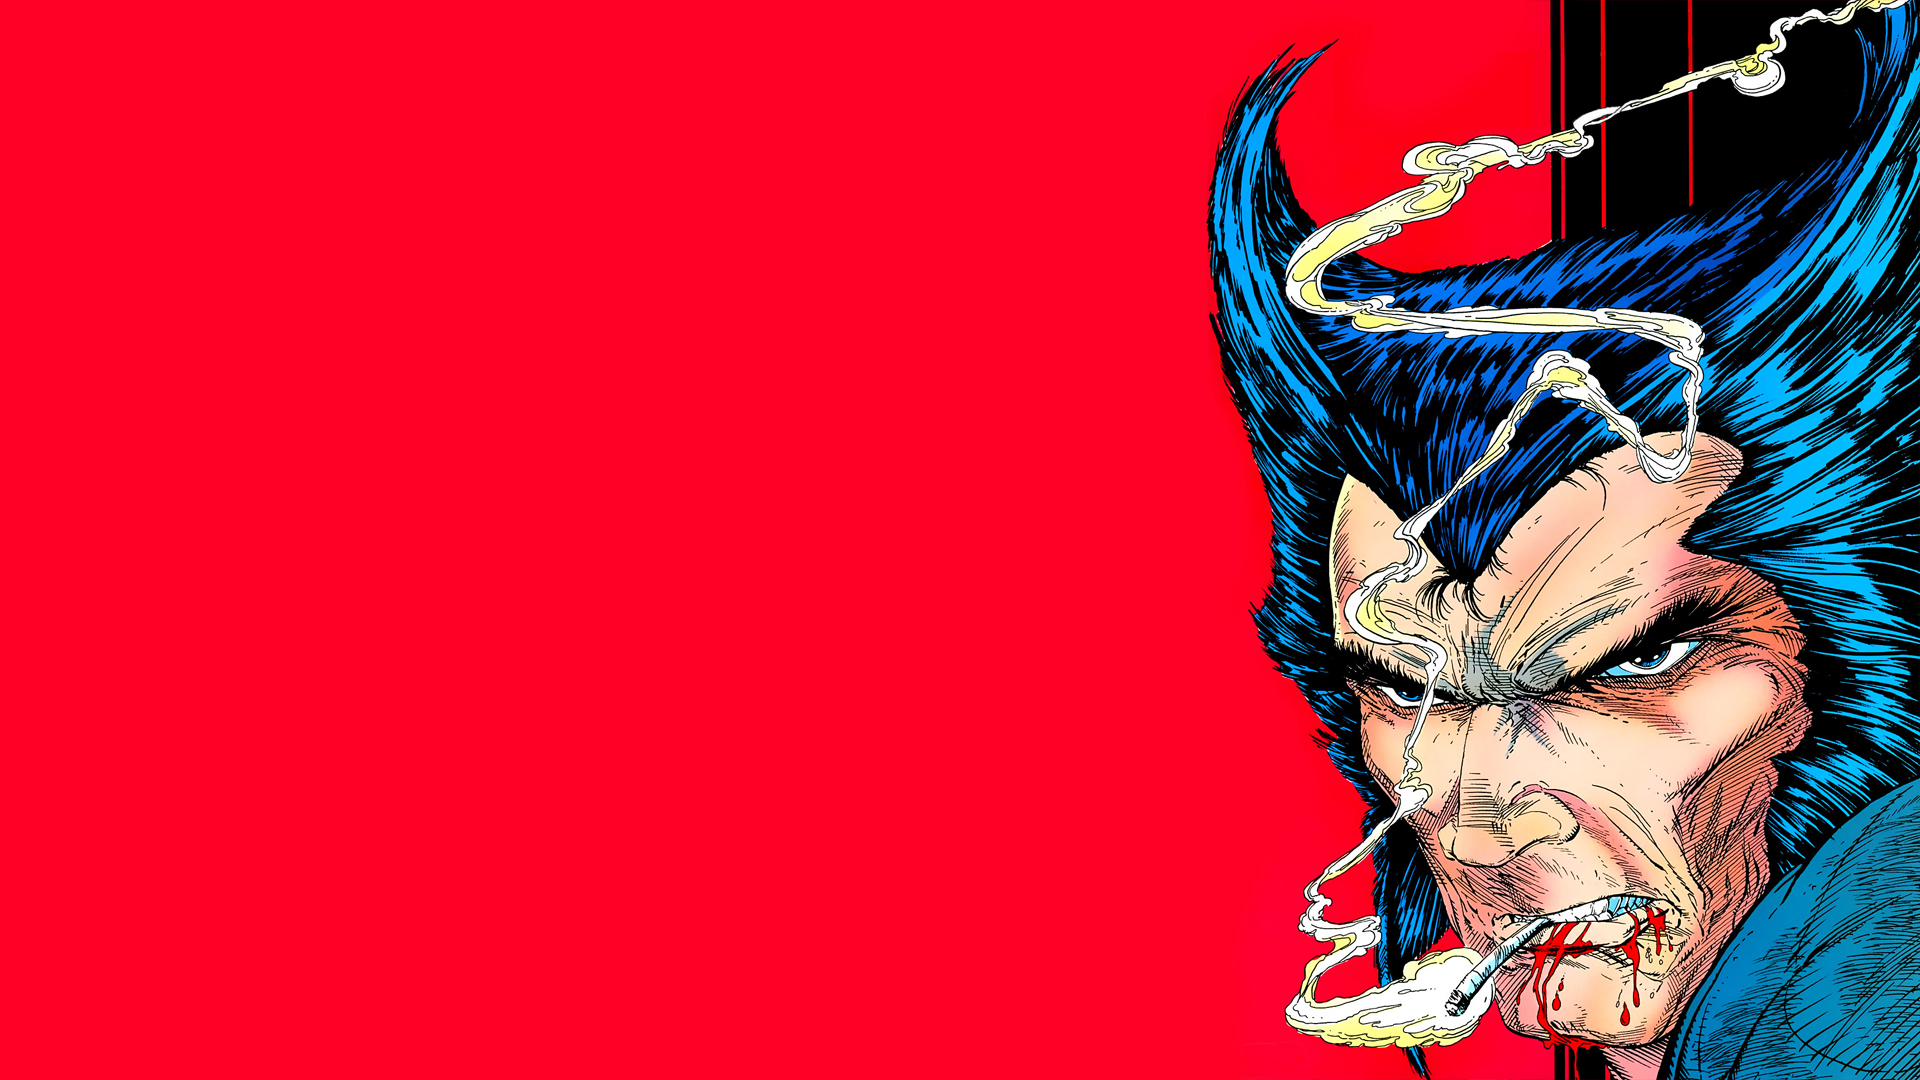 wolverine wallpaper,personaje de ficción,superhéroe,hombre murciélago,liga de la justicia,ilustración